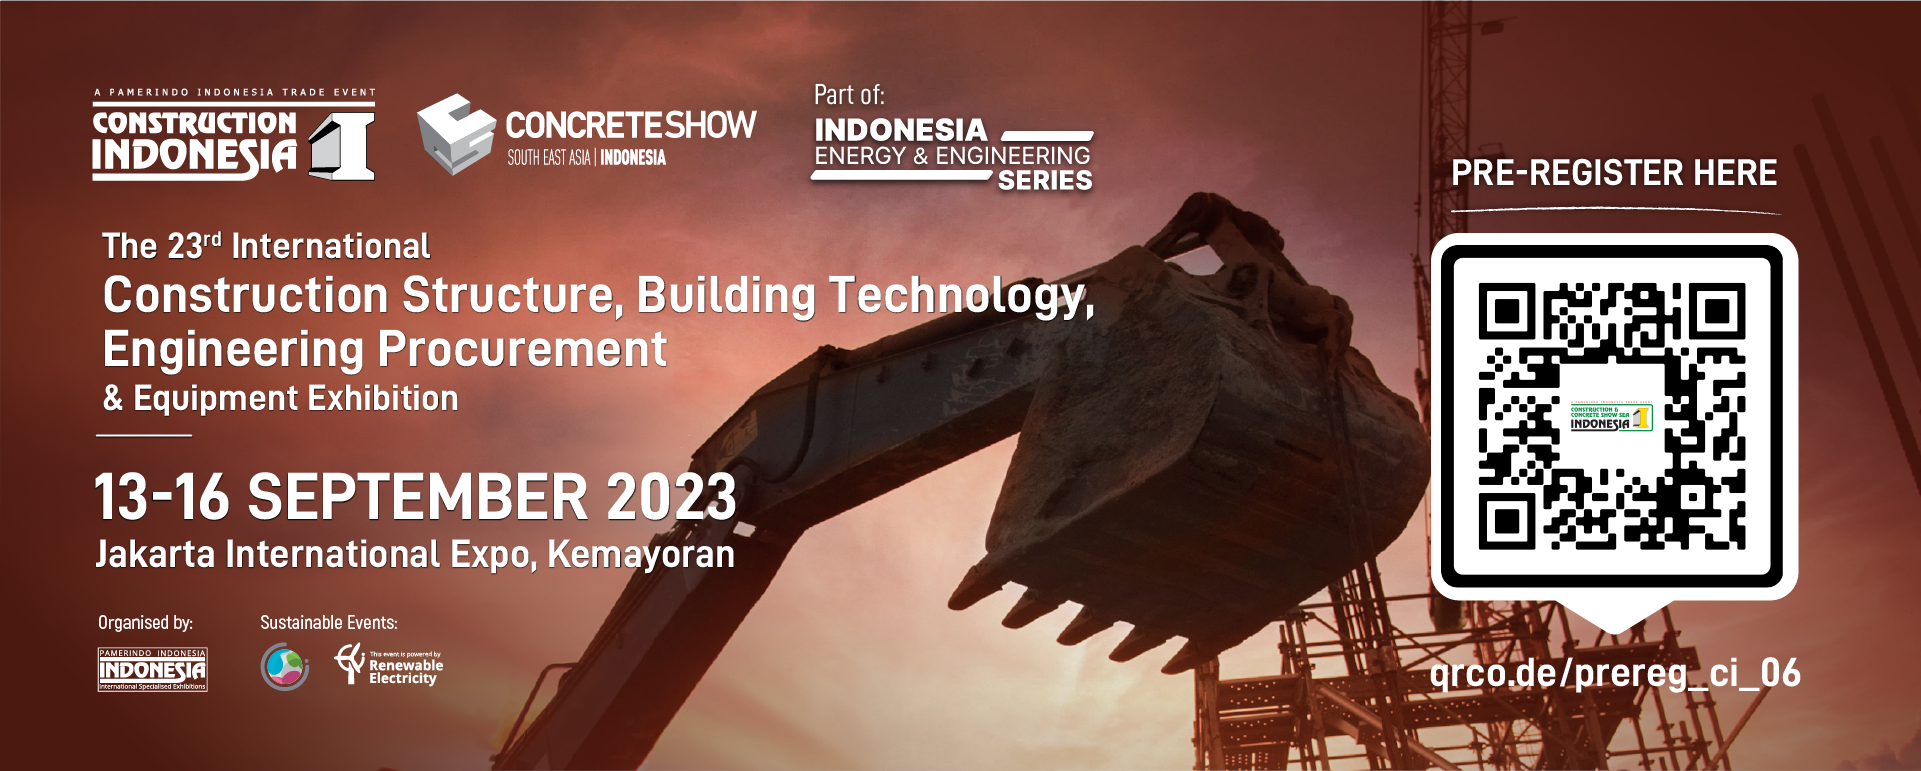 CONSTRUCTION INDONESIA & CONCRETE SHOW INDO 2023 (EVENT LISTING)